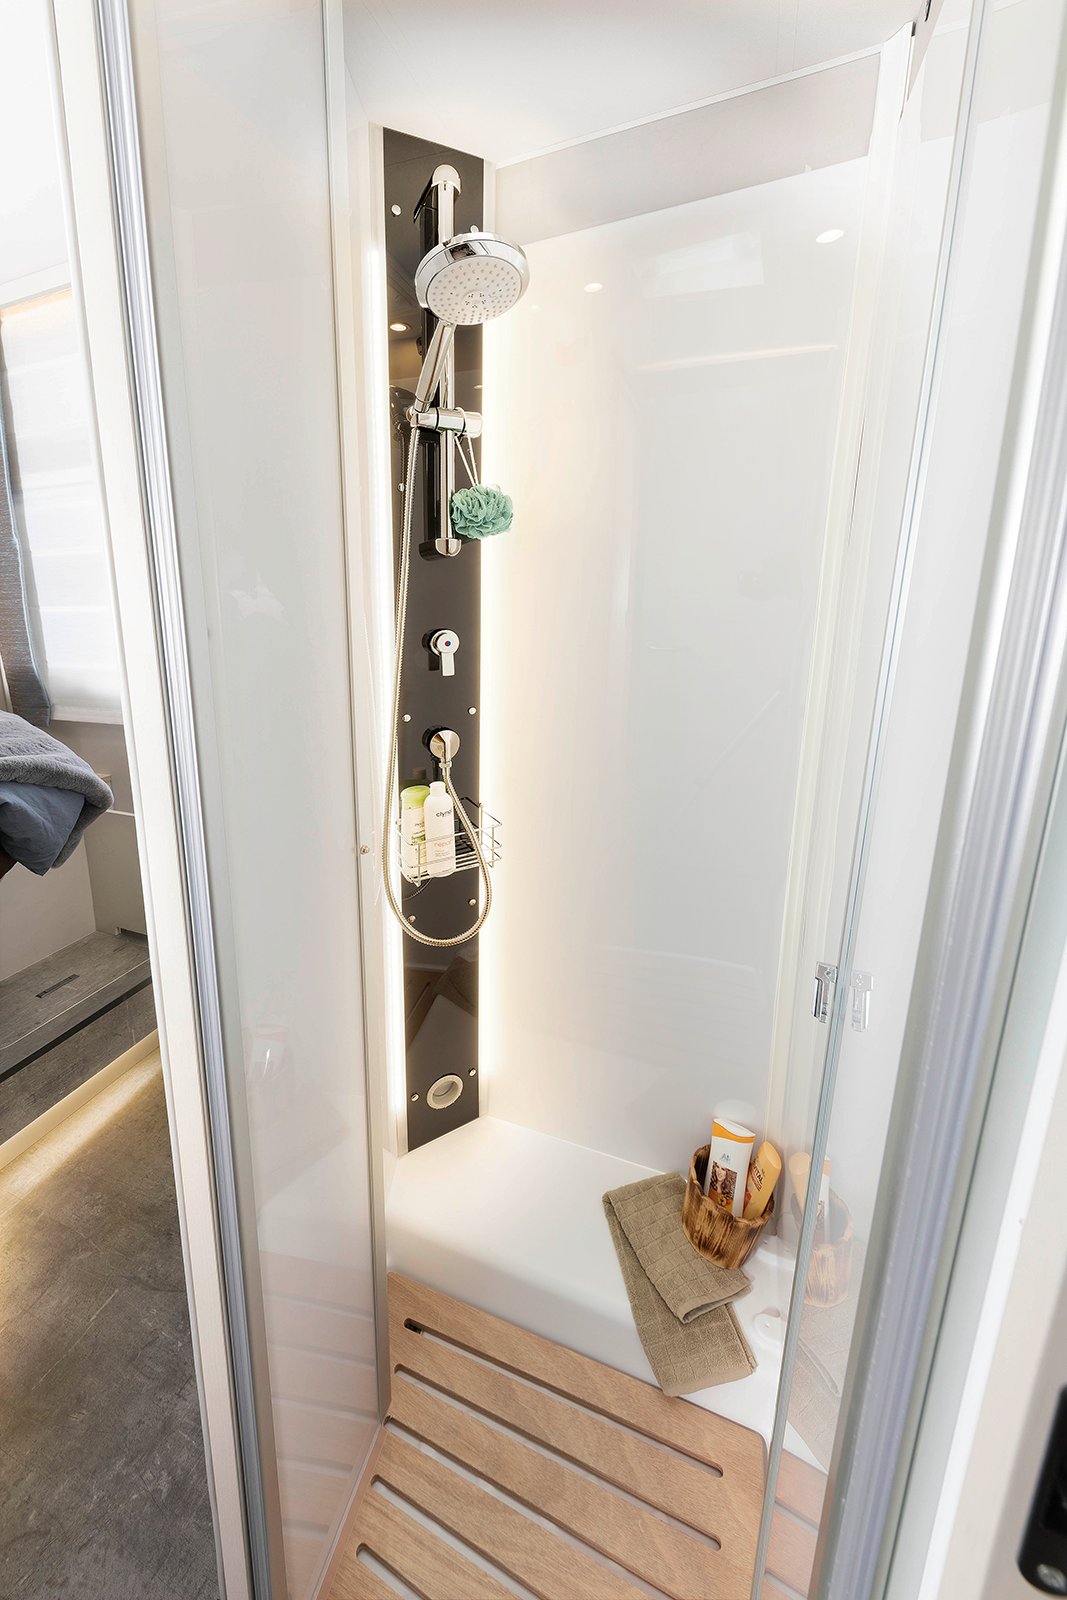 Duża kabina prysznicowa o nowoczesnej stylistyce oraz oświetlenie pośrednie decydują o wysokim komforcie wnętrza